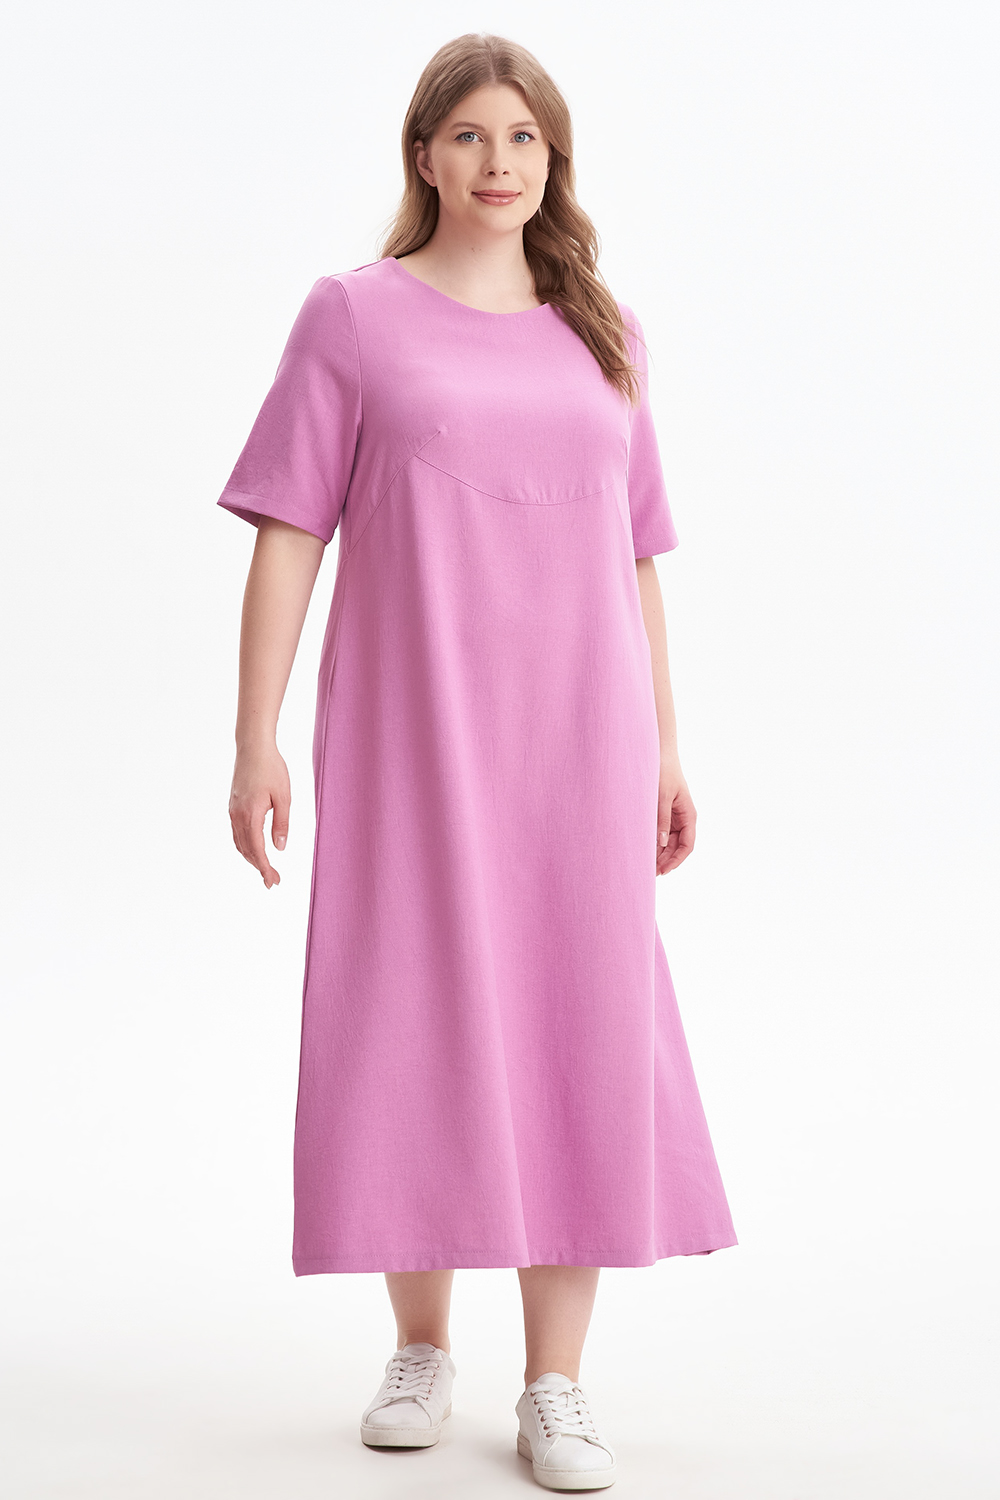 Платье женское OLSI 2305012 розовое 64 RU